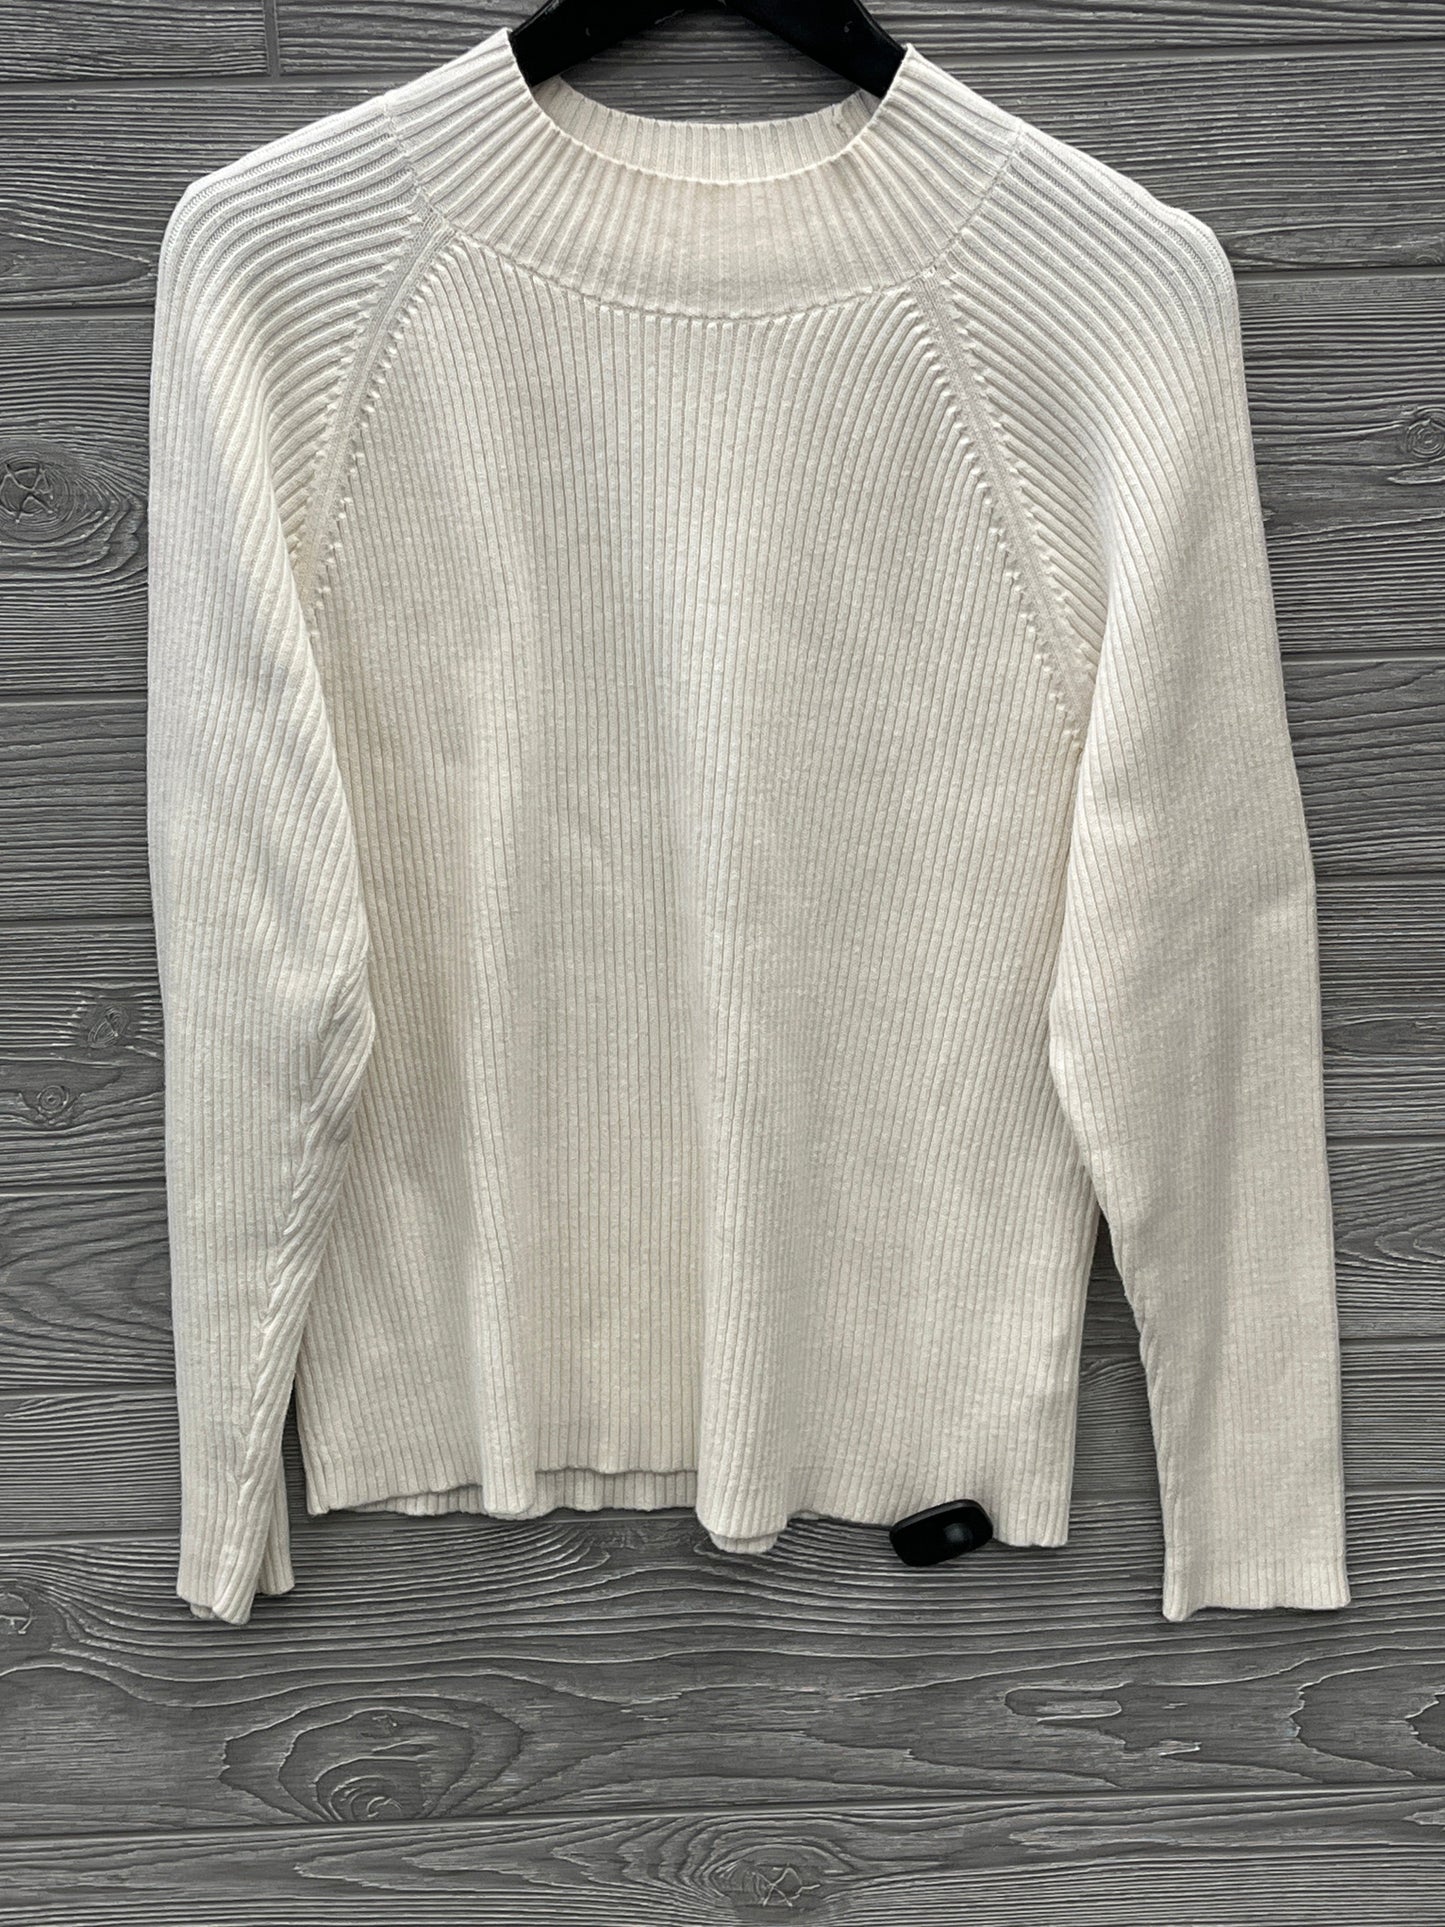 Sweater By Studio Works  Size: Xl